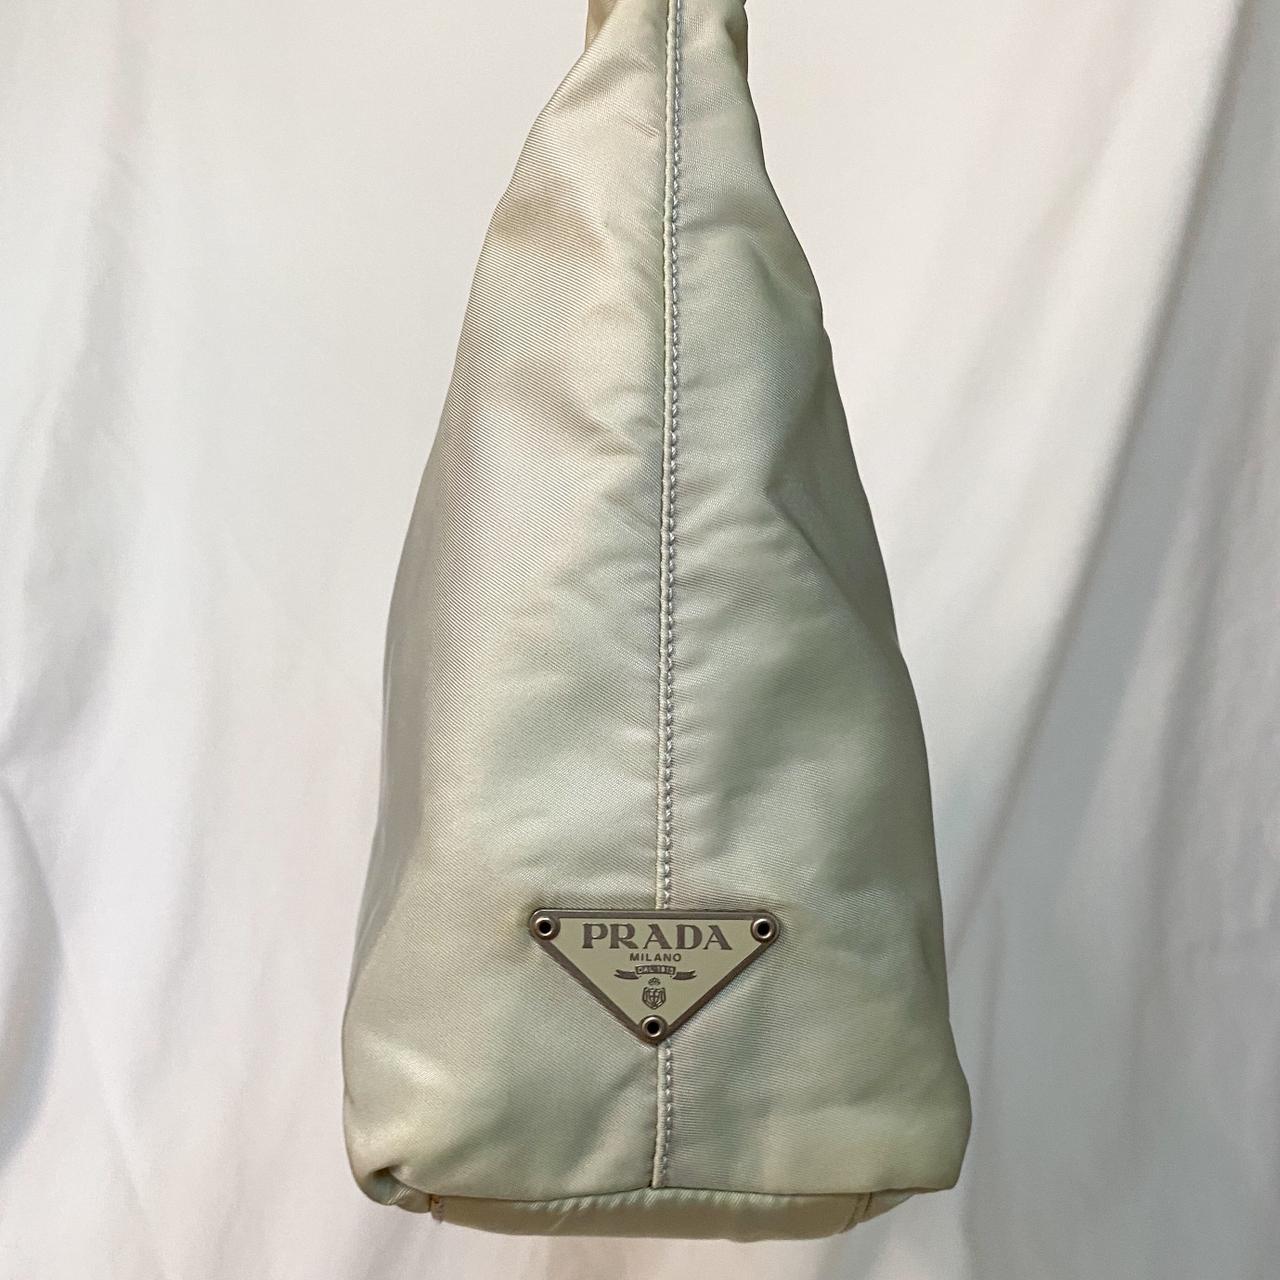 Rare vintage Prada bag (1990s) , Medium size , Comes